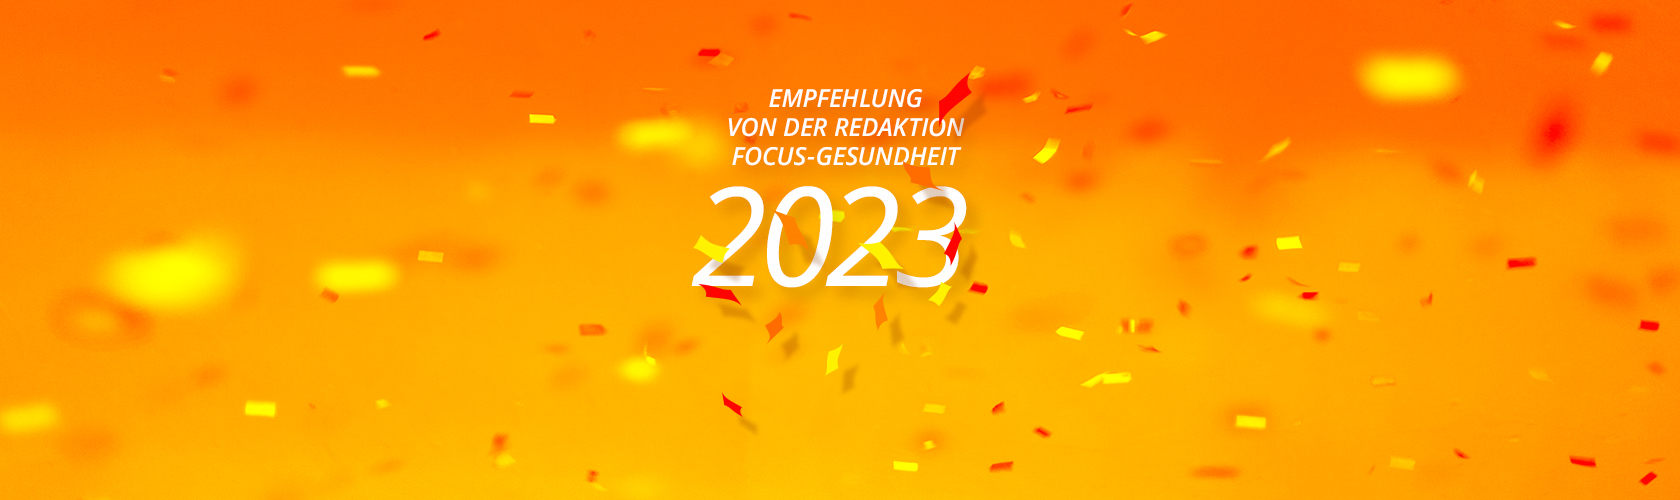 Die Zeitschrift FOCUS empfiehlt auch 2023 unsere Praxis! - Praxis News